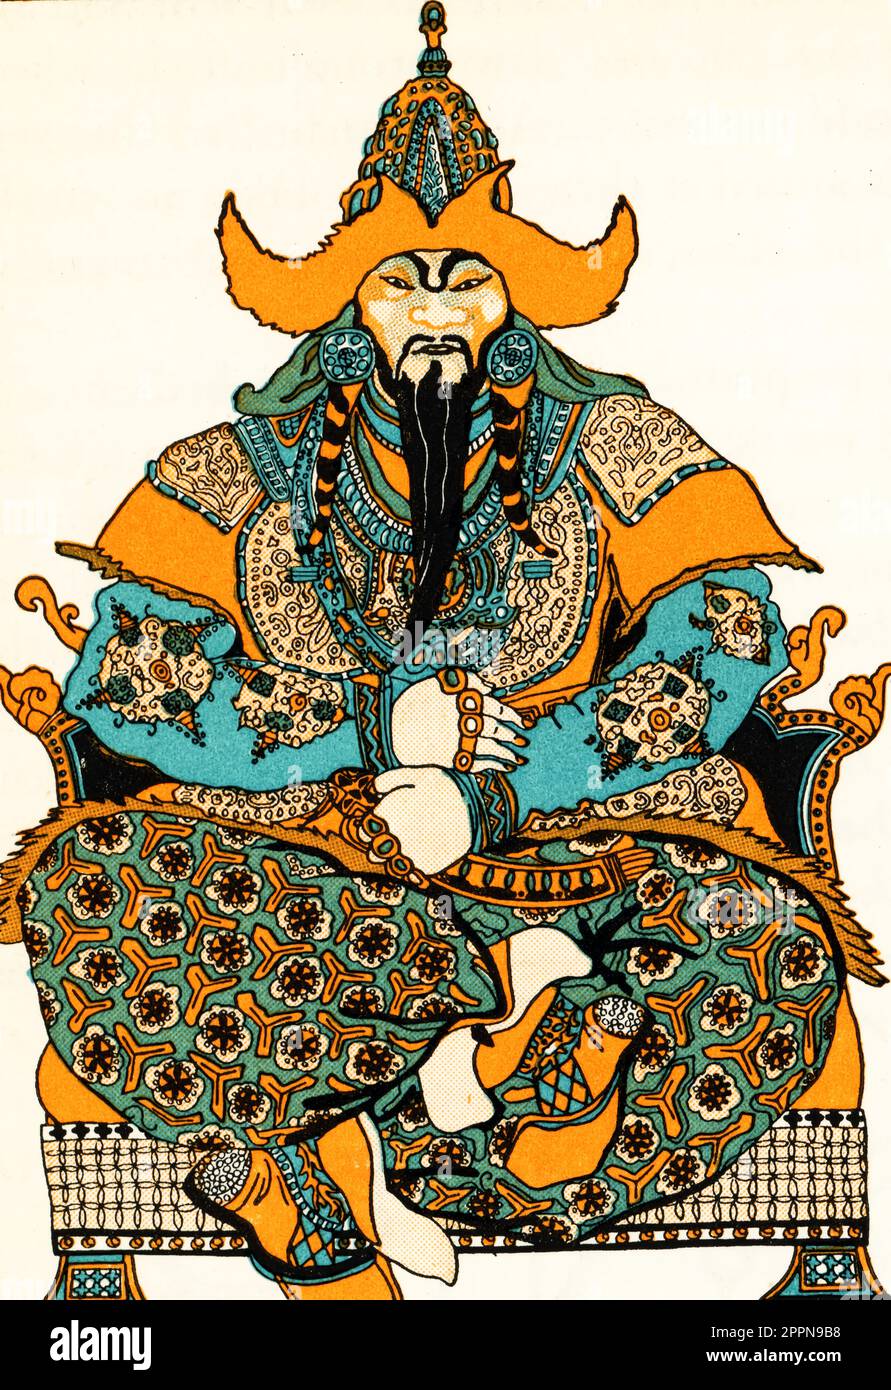 Genghis Khan (c1162-1227), c1937. Genghis Khan fu il fondatore e primo khagan dell'Impero Mongolo, che in seguito divenne il più grande impero terrestre contiguo della storia. Foto Stock